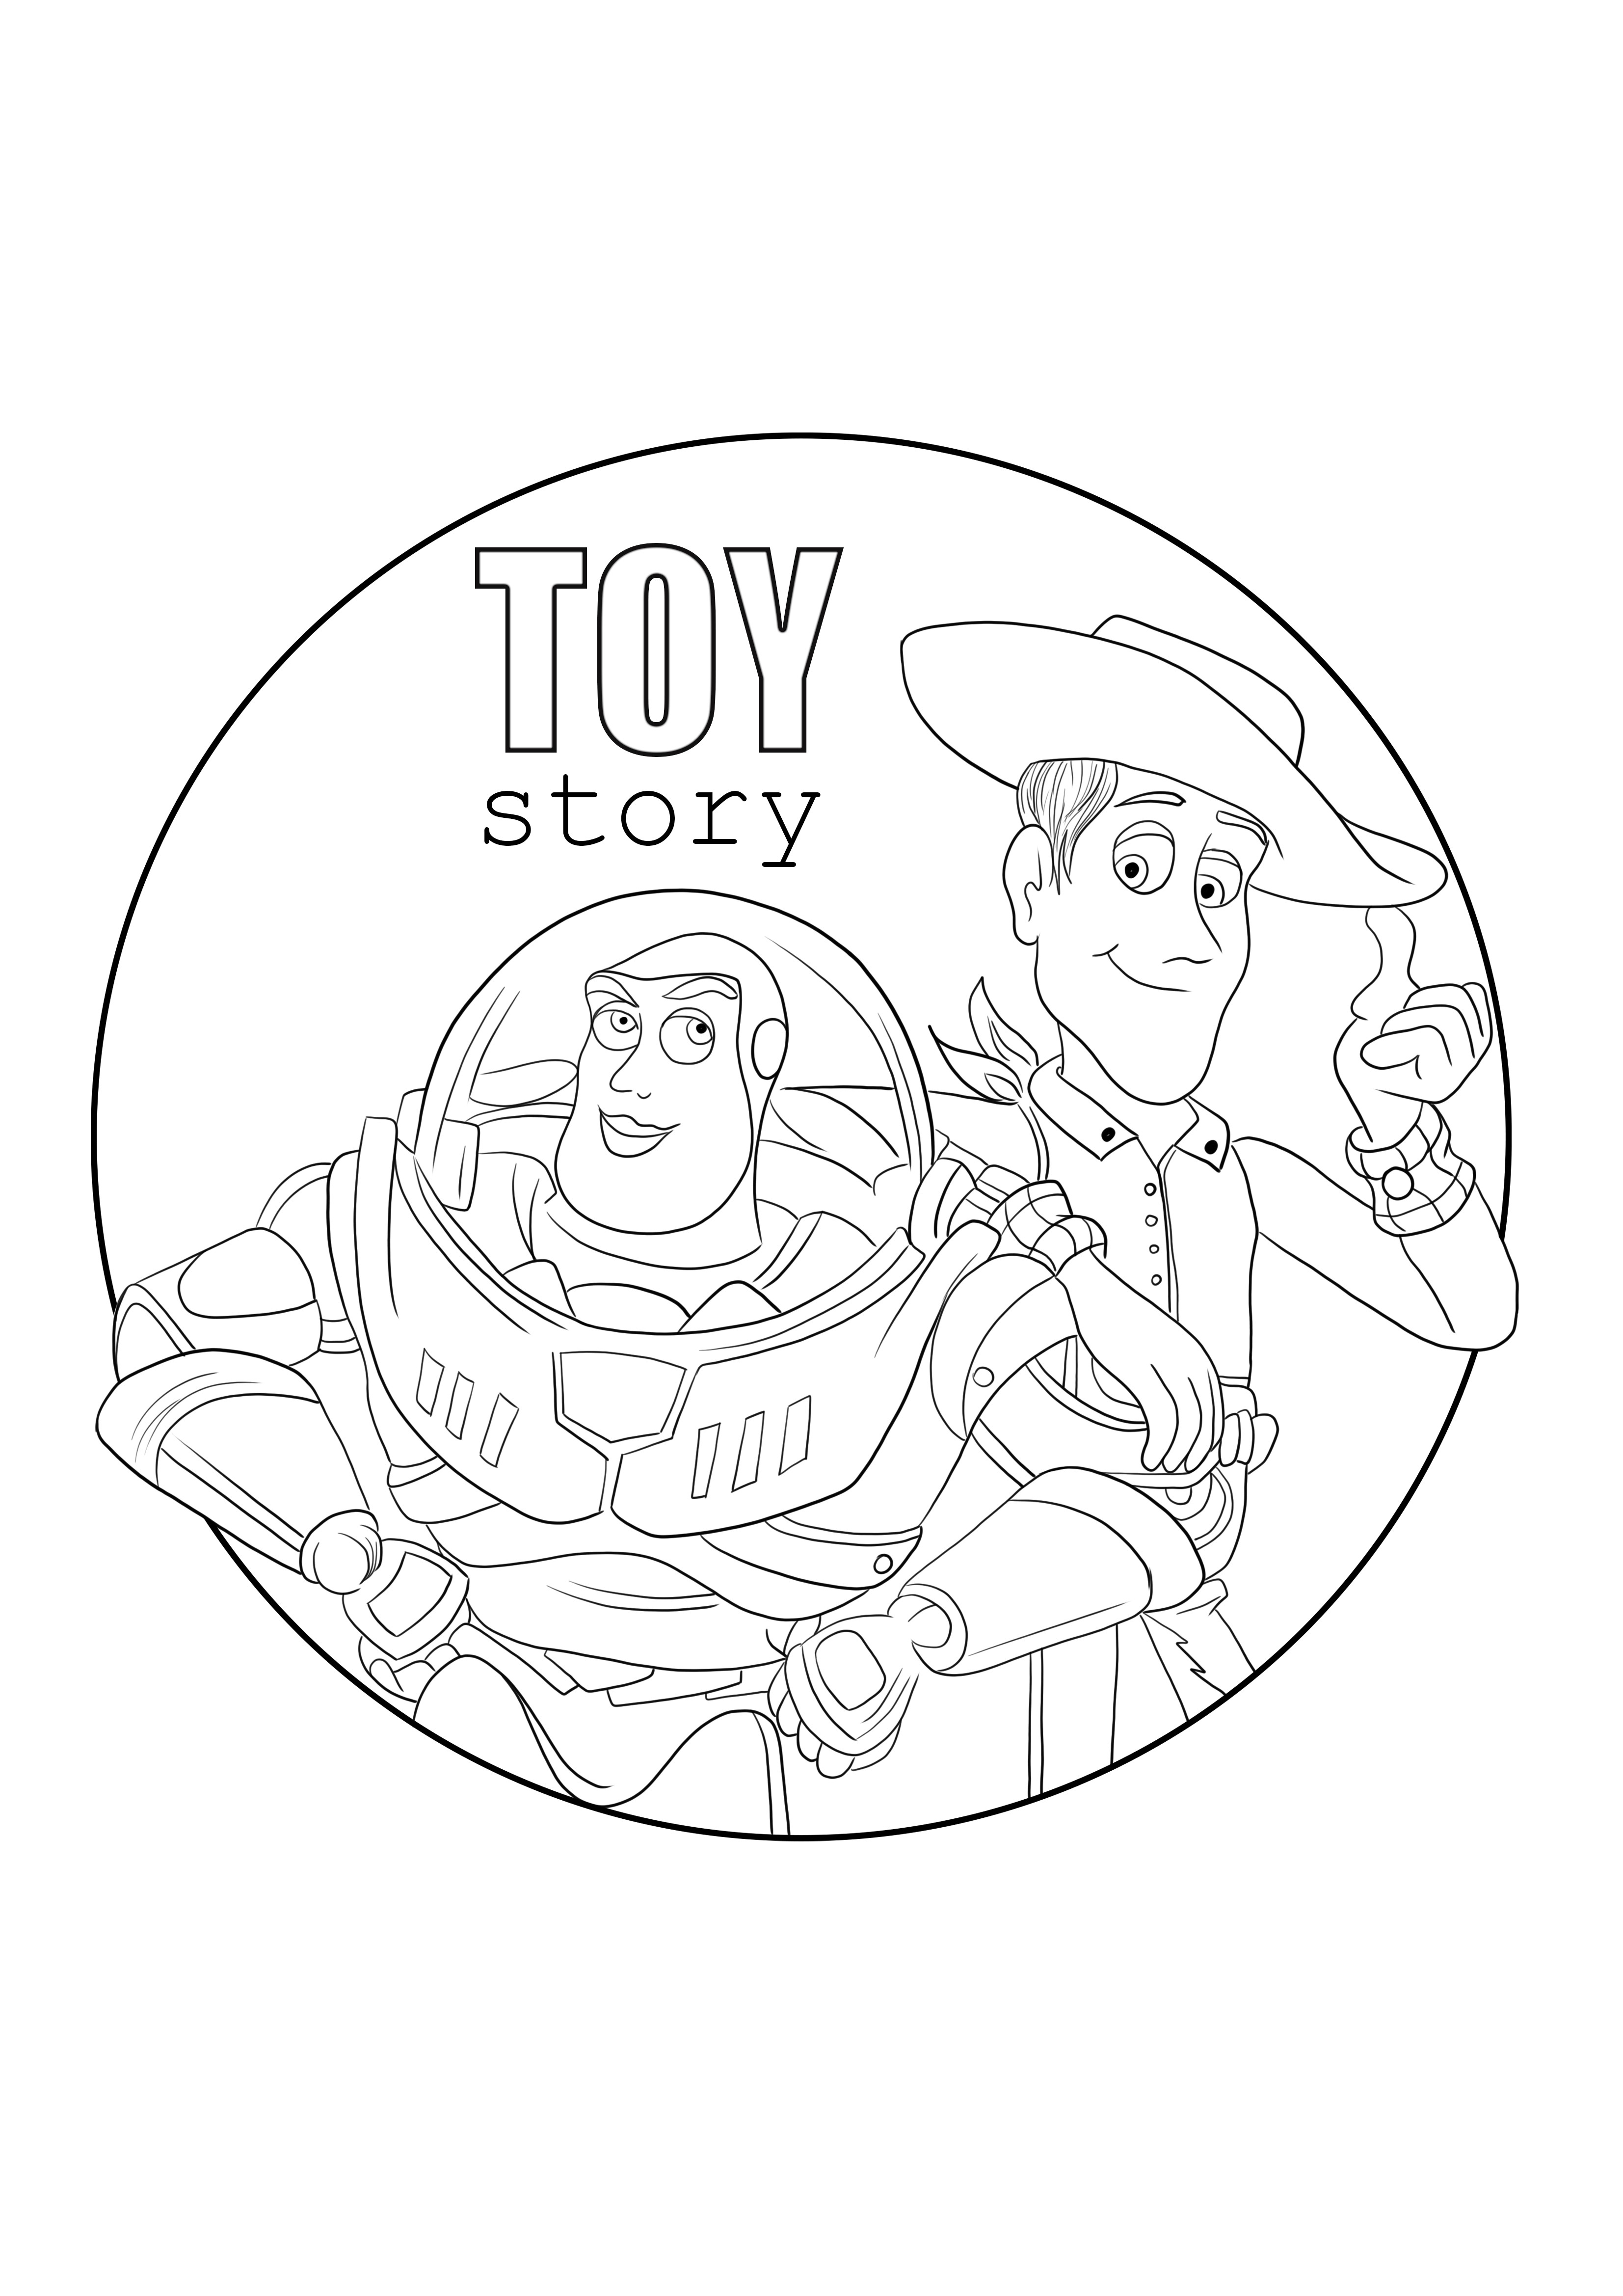 Woody i Buzz kolorowanie i darmowe drukowanie